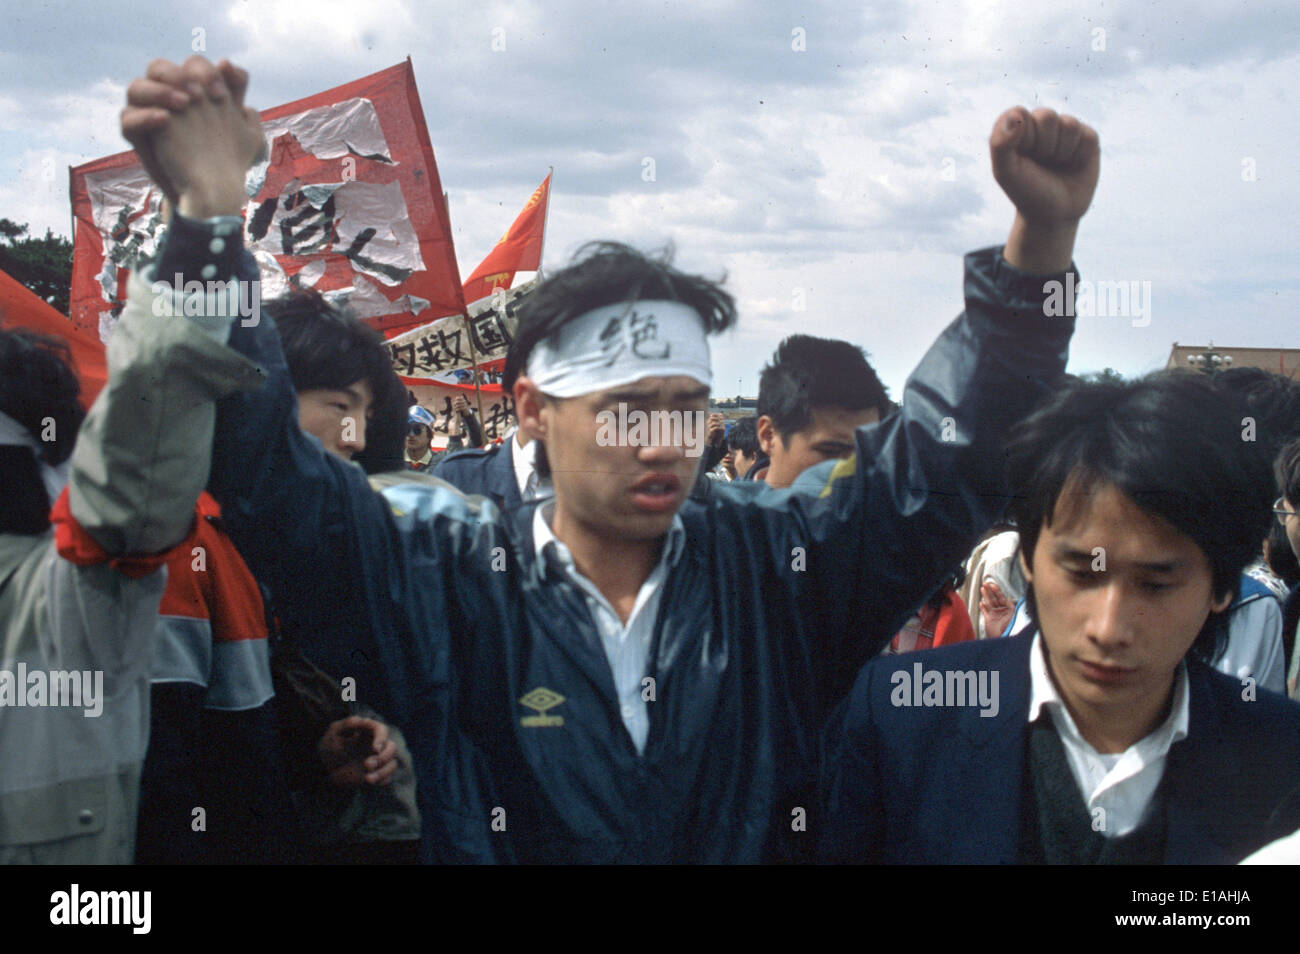 (Dossier) - Une archive photo, datée du 13 mai 1989, illustre chef de la manifestations étudiantes Wuer Kaixi protestant parmi une foule d'étudiants au cours d'une manifestation sur la place Tiananmen à Pékin, Chine. Kaixi porte un serre-tête qui se lit 'Jueshi" (grève de la faim). Il y a 25 ans, les protestations de la Chine s'est creusé en captial mais ont finalement été battus violemment vers le bas. Photo : Edgar Bauer/dpa Banque D'Images